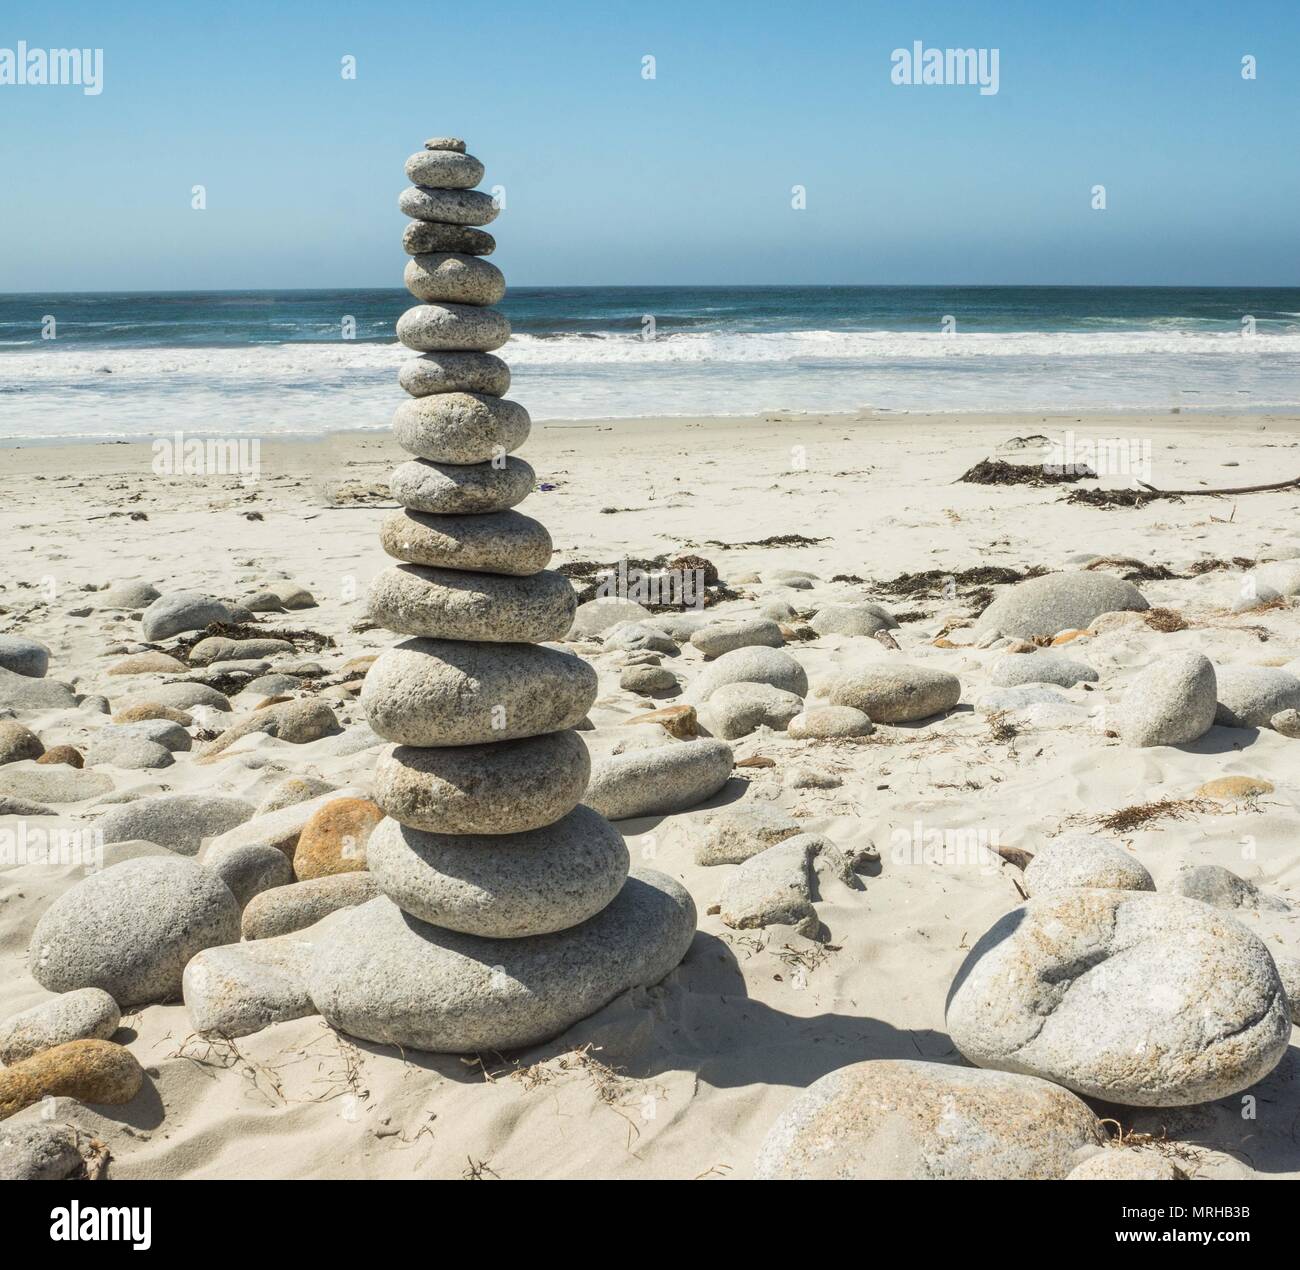 Piedras apiladas en una playa de arena fina por el océano. Foto de stock